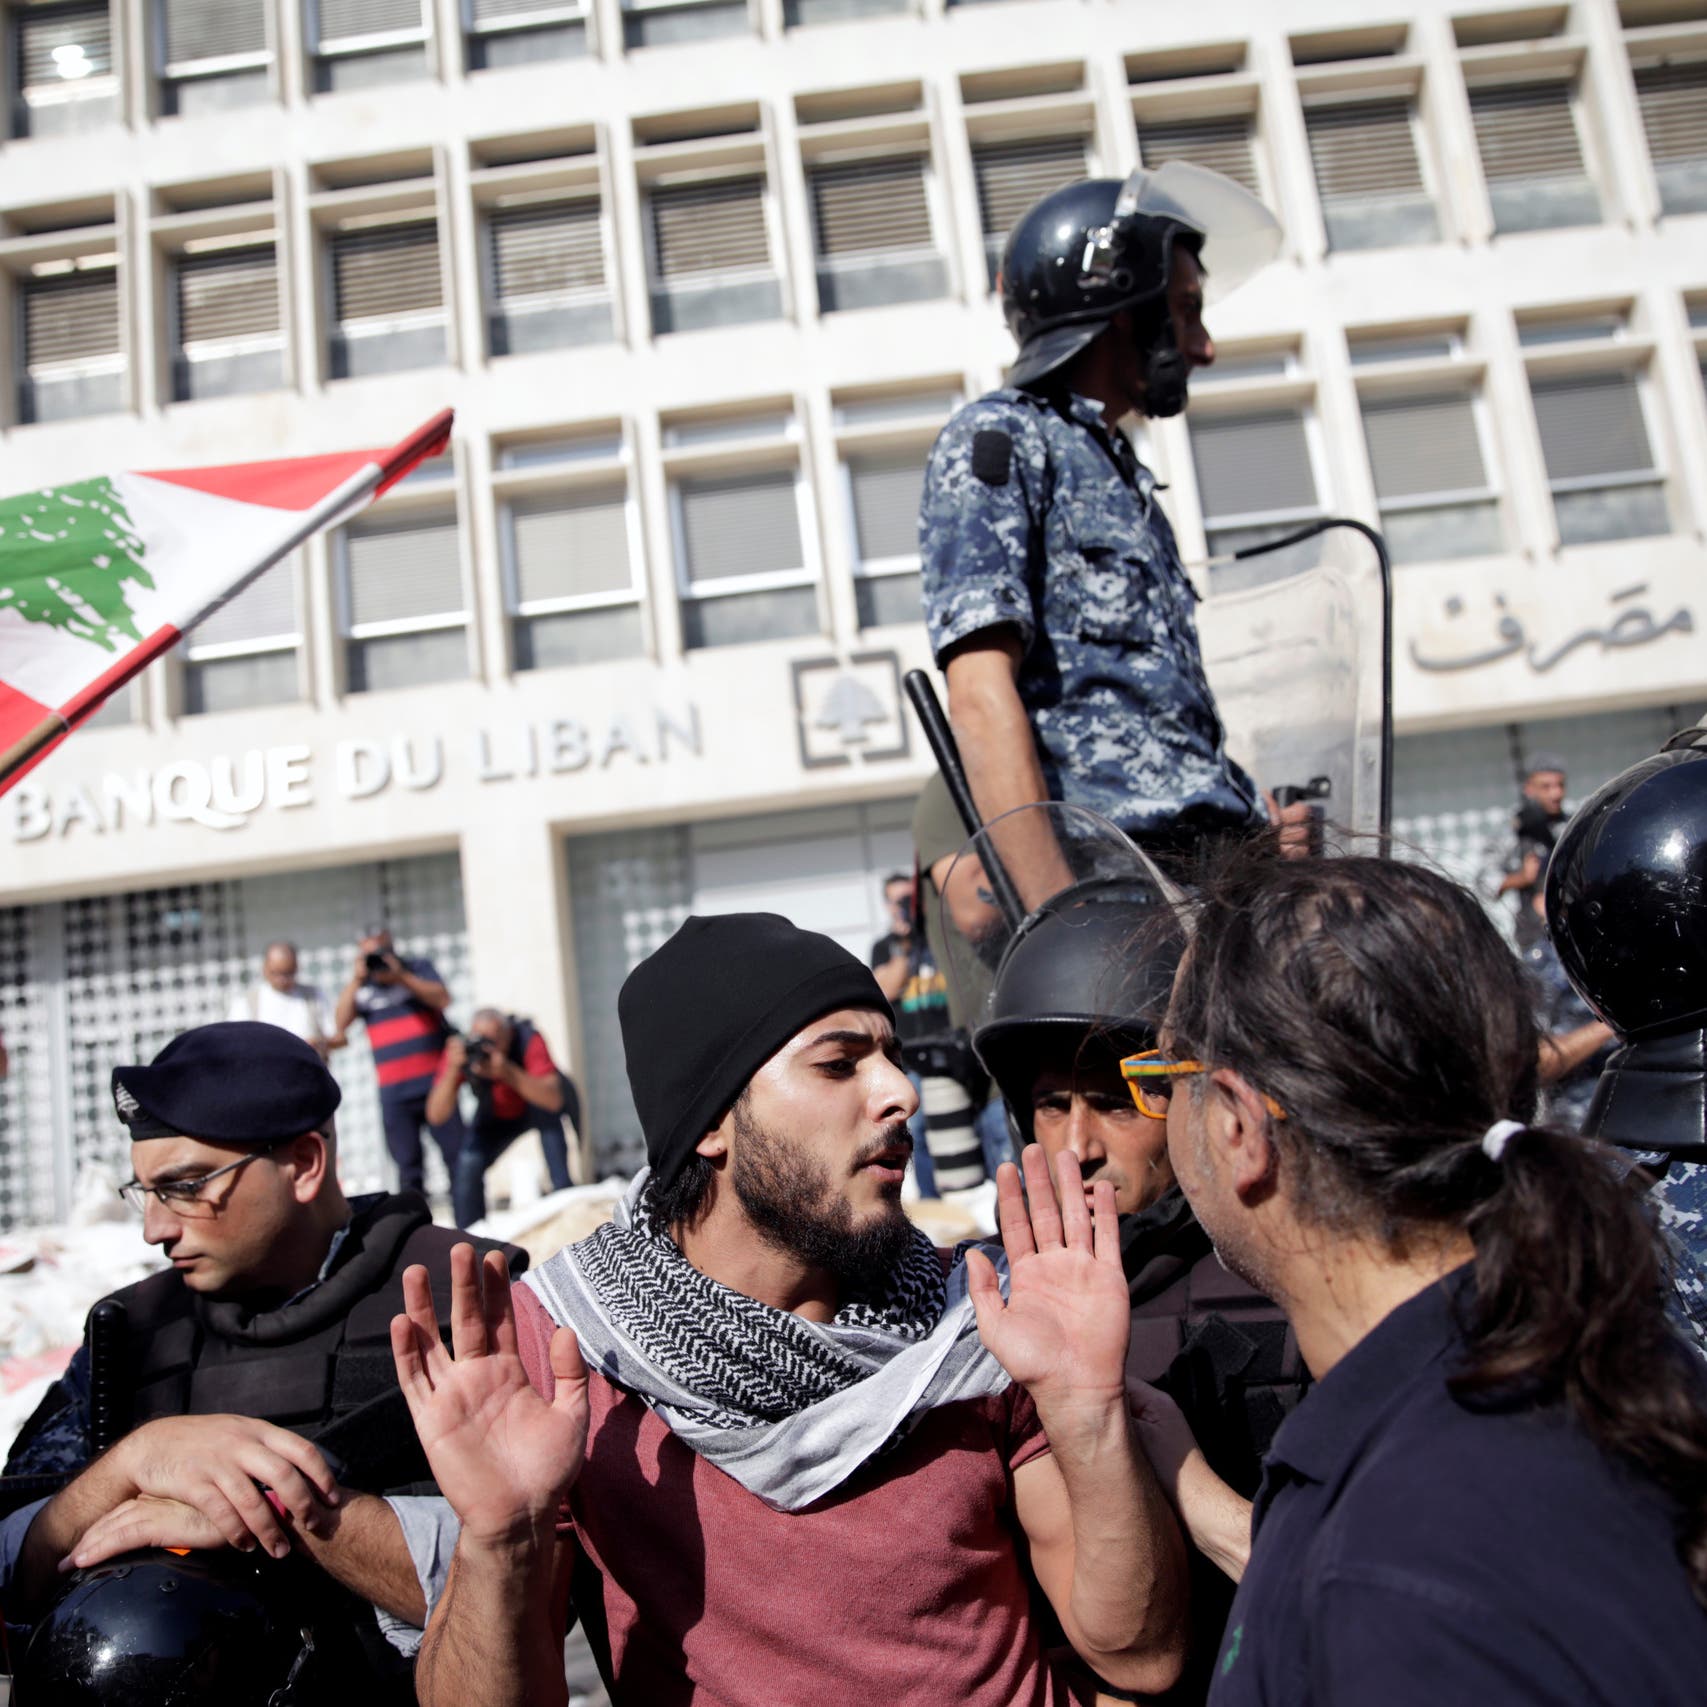 مصرف لبنان يطلب رسمياً التحقيق بأموال السياسيين المهربة